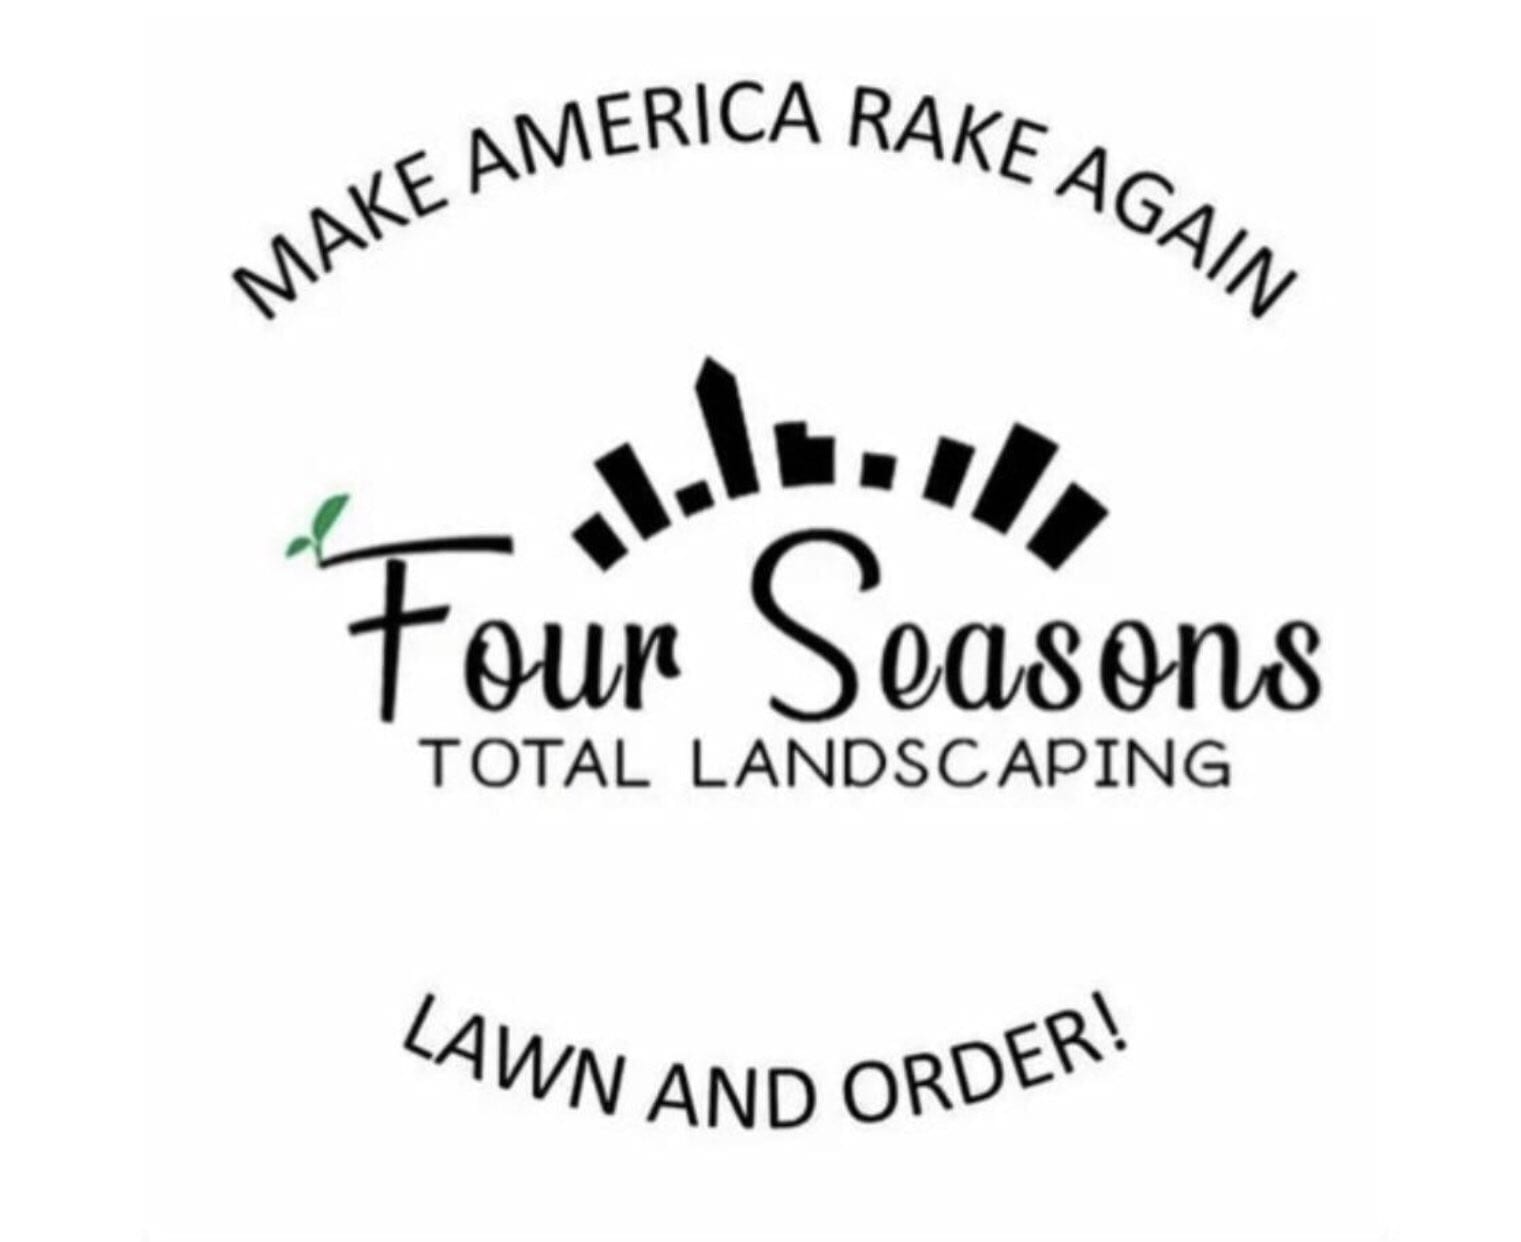 Make America Rake Again - Four Seasons Total Landscaping